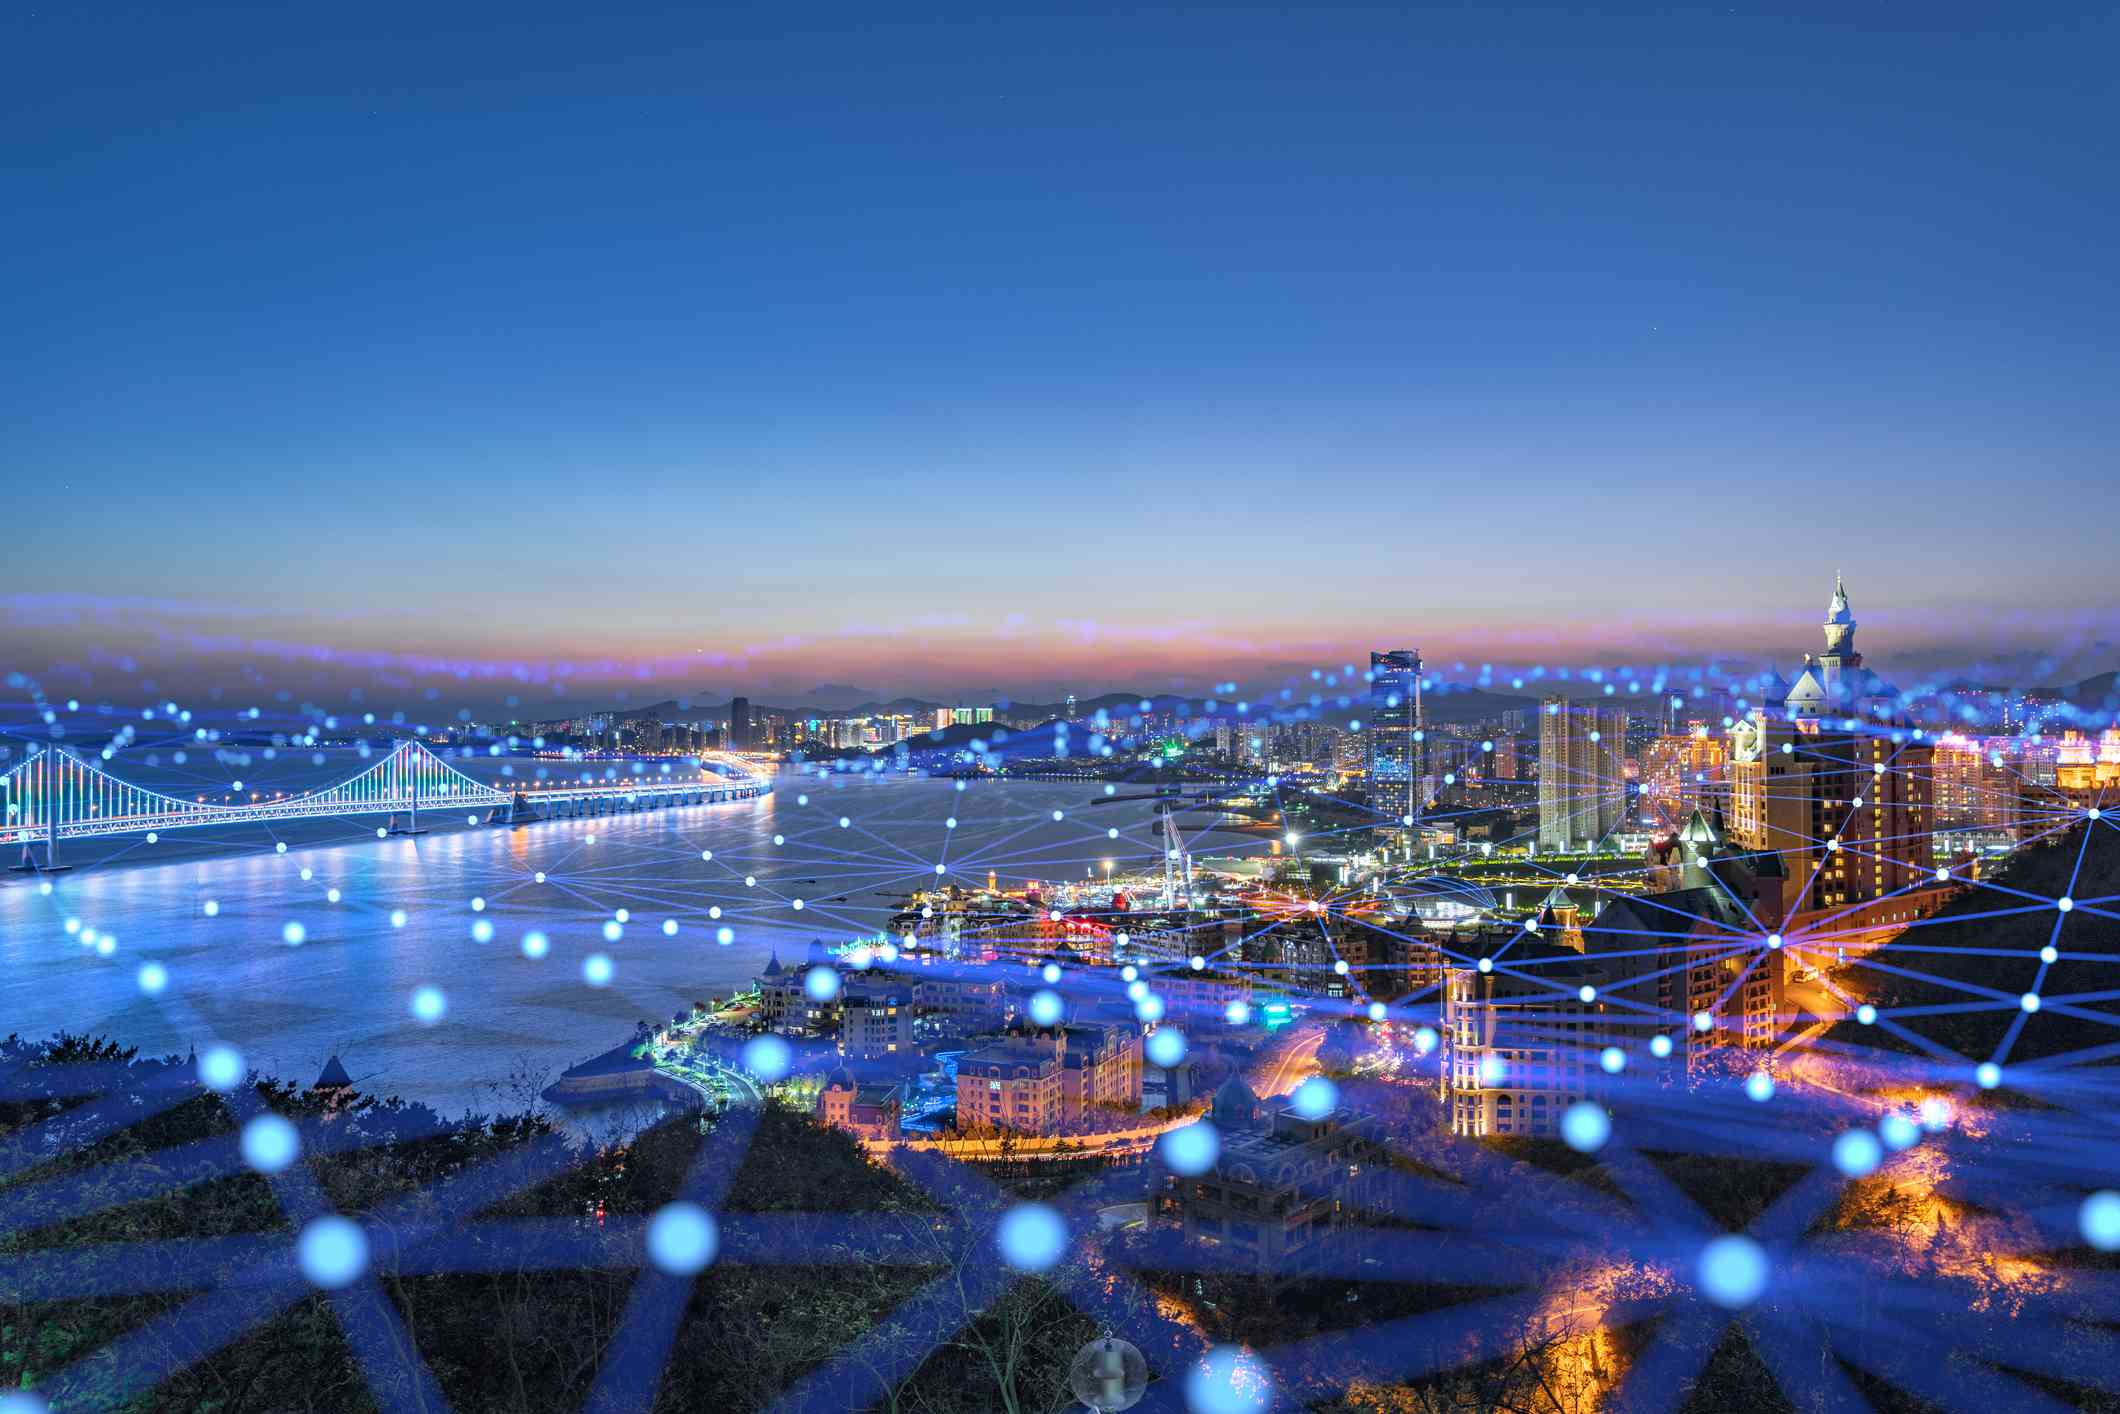 Město pokryté pavučinou transparentních modrých světel a čar představujících konektivitu